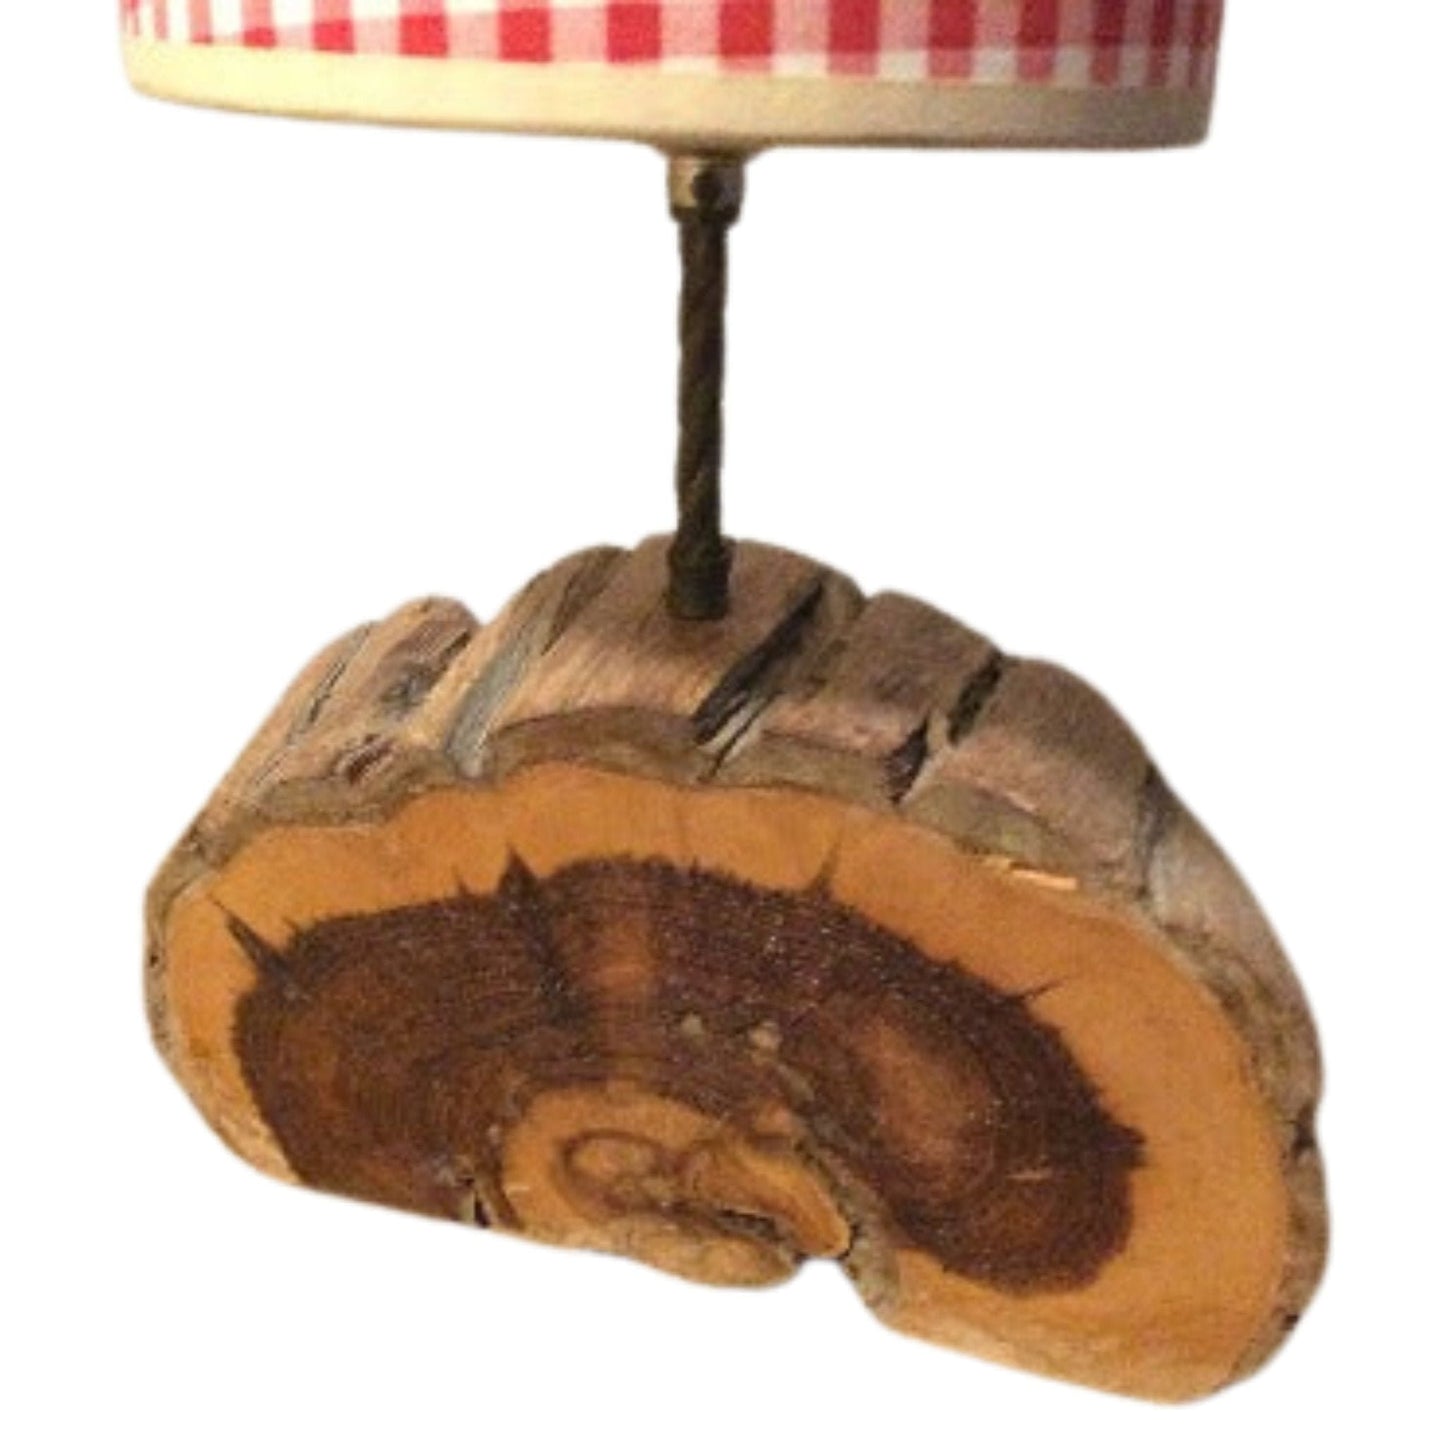 Western Live Edge Lamp Multi / Wood / Vintage 1940s